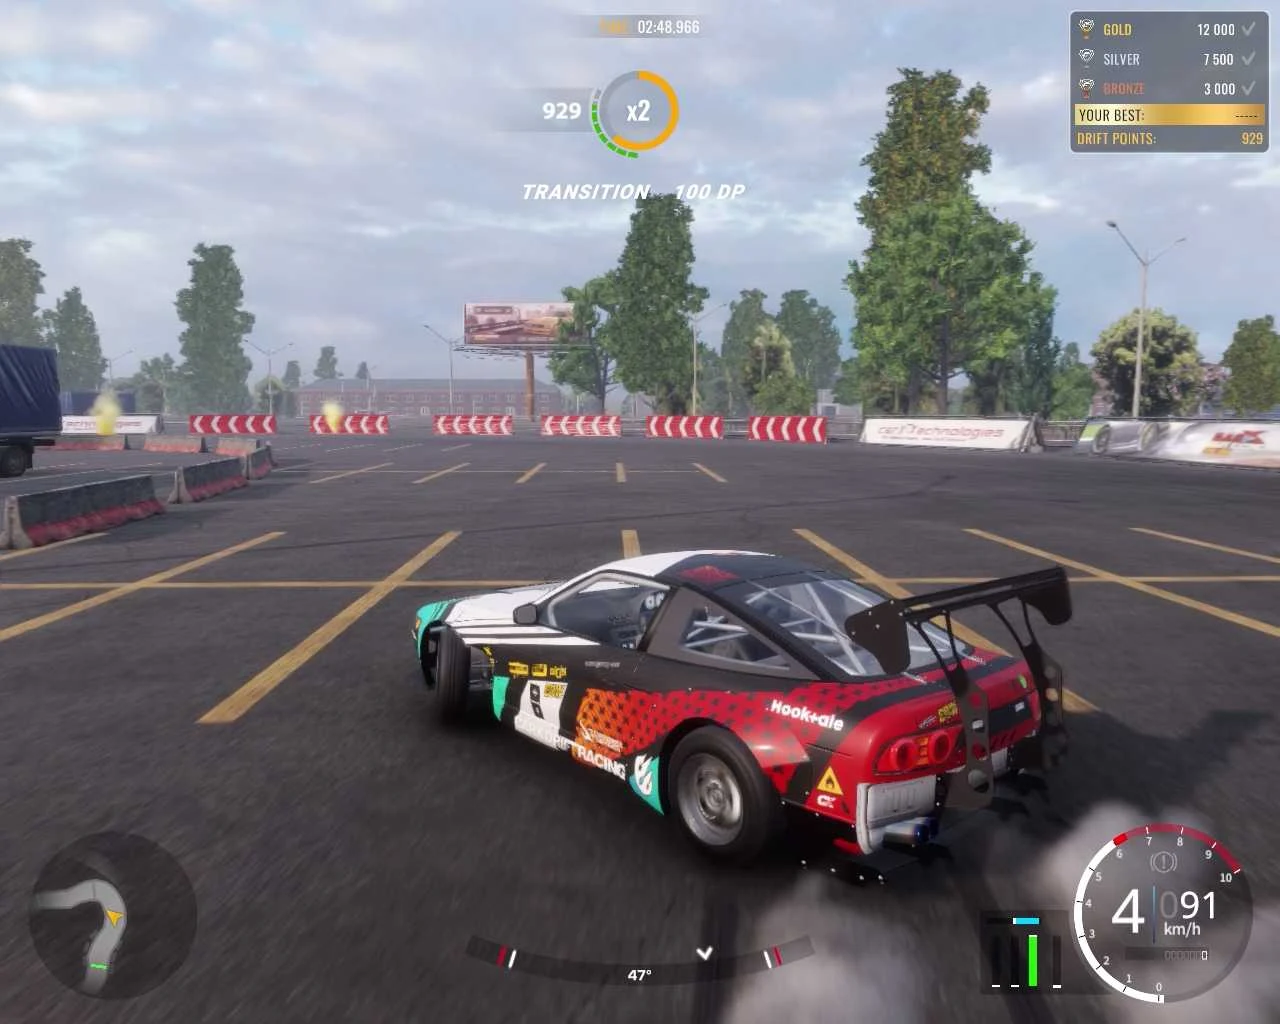 CarX Drift Racing Online (v2.11) for Windows 10